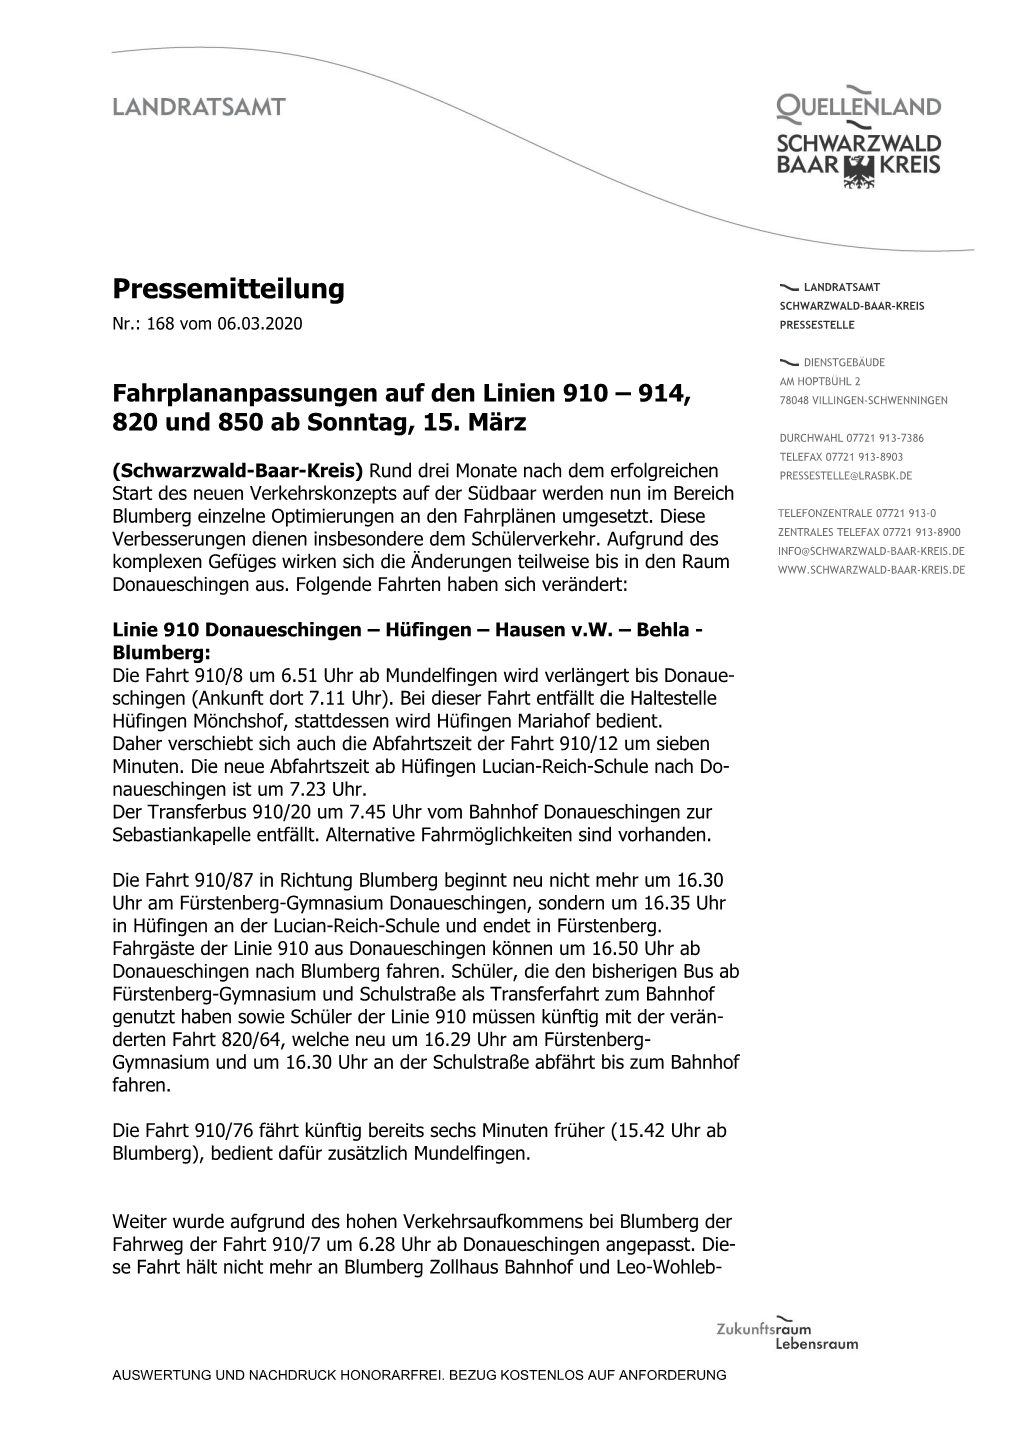 Pressemitteilung LANDRATSAMT SCHWARZWALD-BAAR-KREIS Nr.: 168 Vom 06.03.2020 PRESSESTELLE